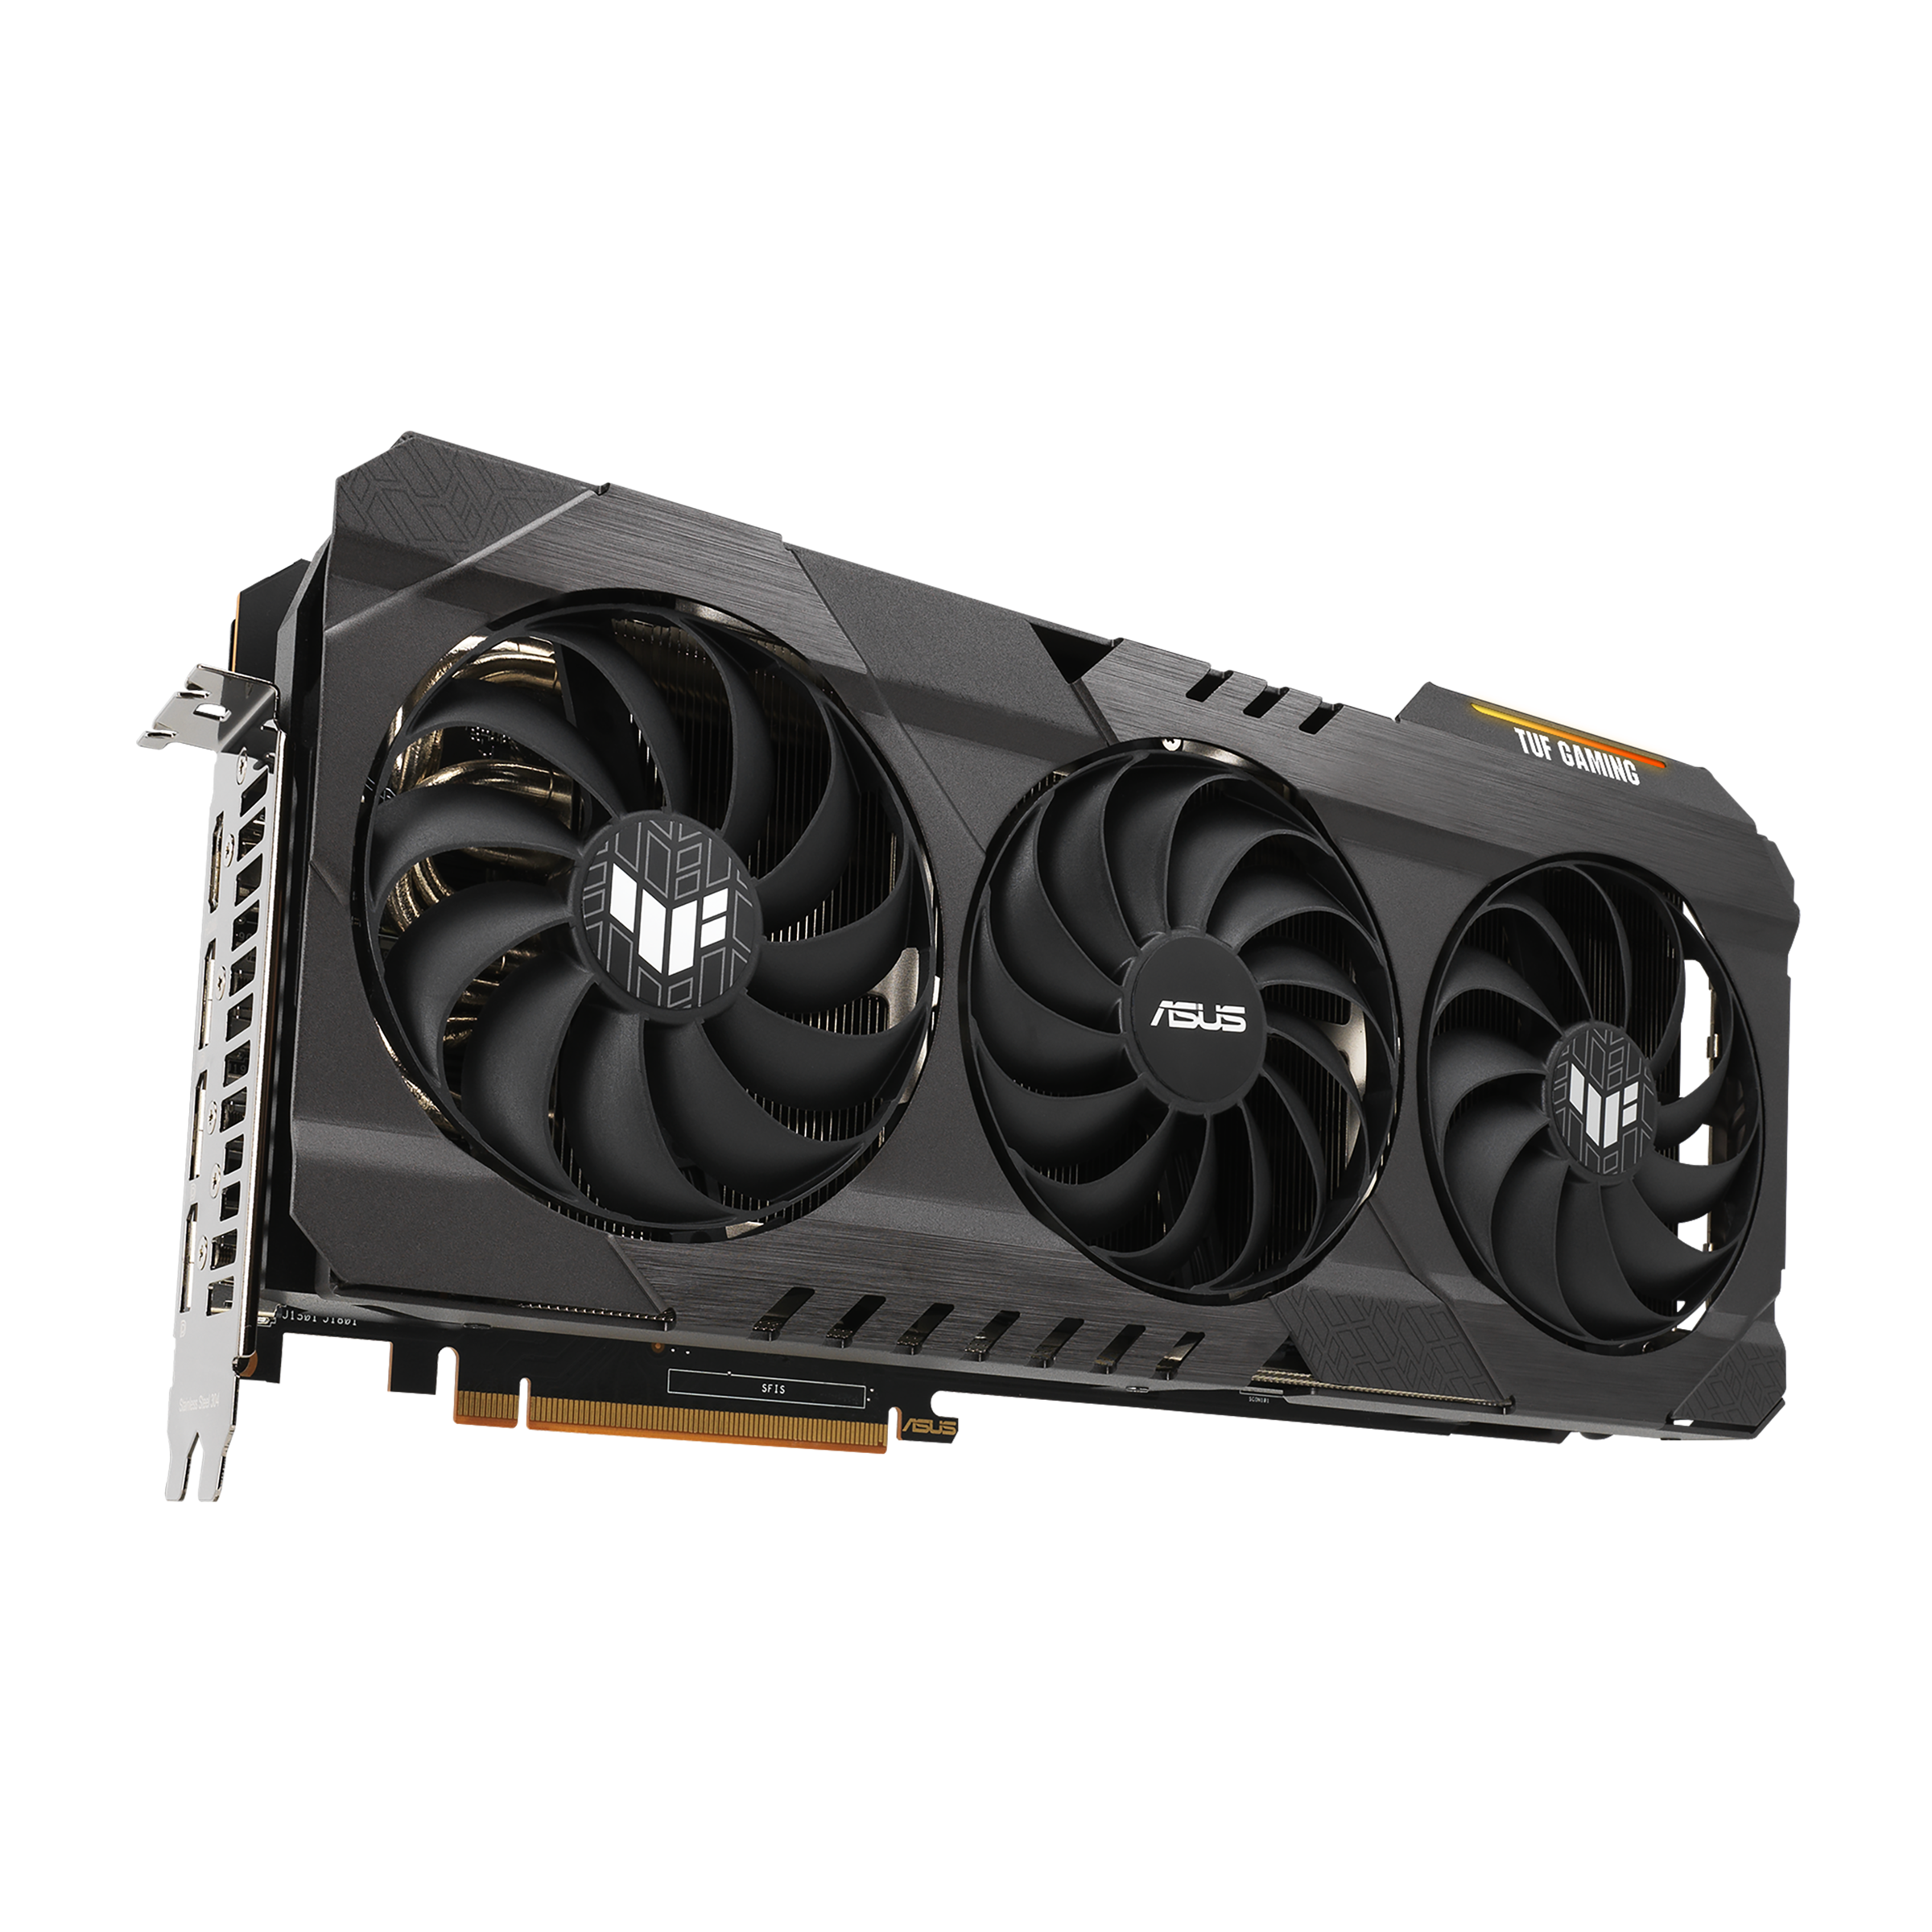 Top 7 Best AMD Radeon RX 6900 XT GPU 